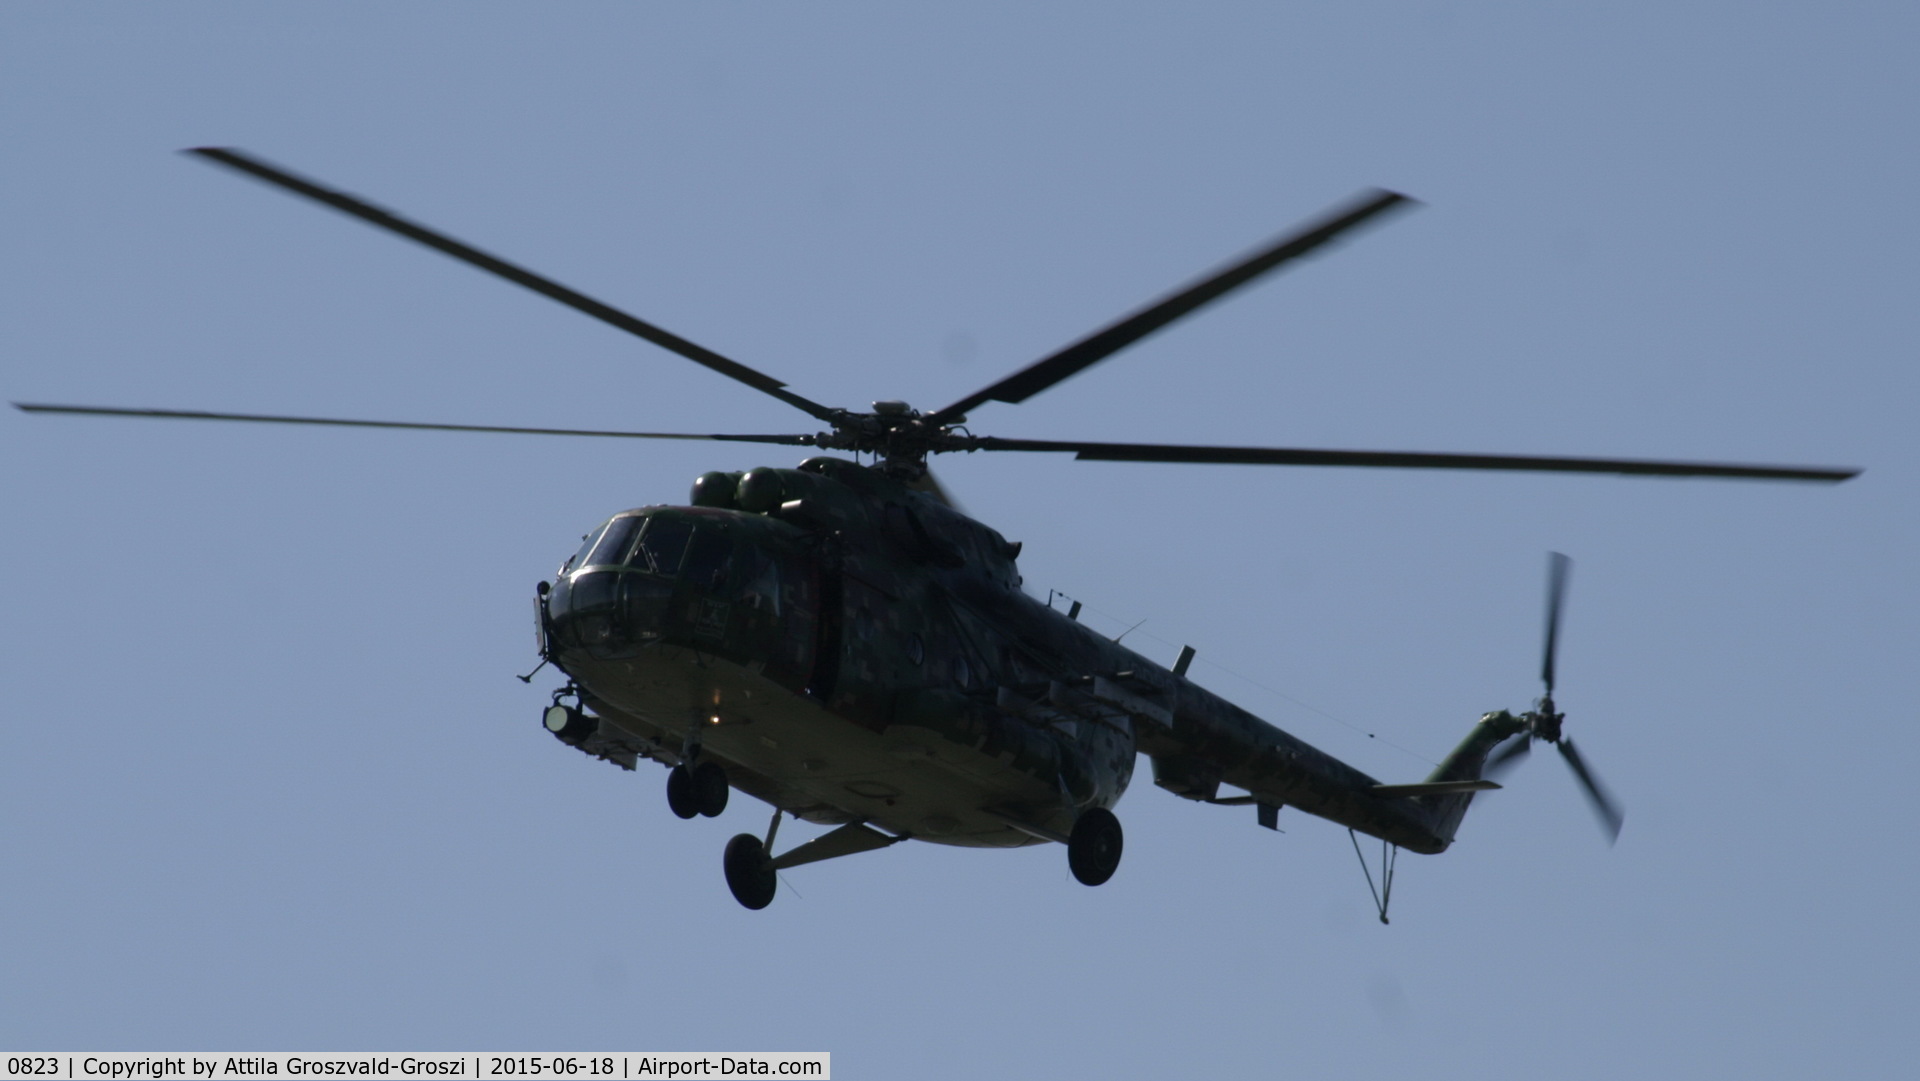 0823, 1987 Mil Mi-17M C/N 108M23, Veszprém, Jutas-újmajor Military training base, Hungary